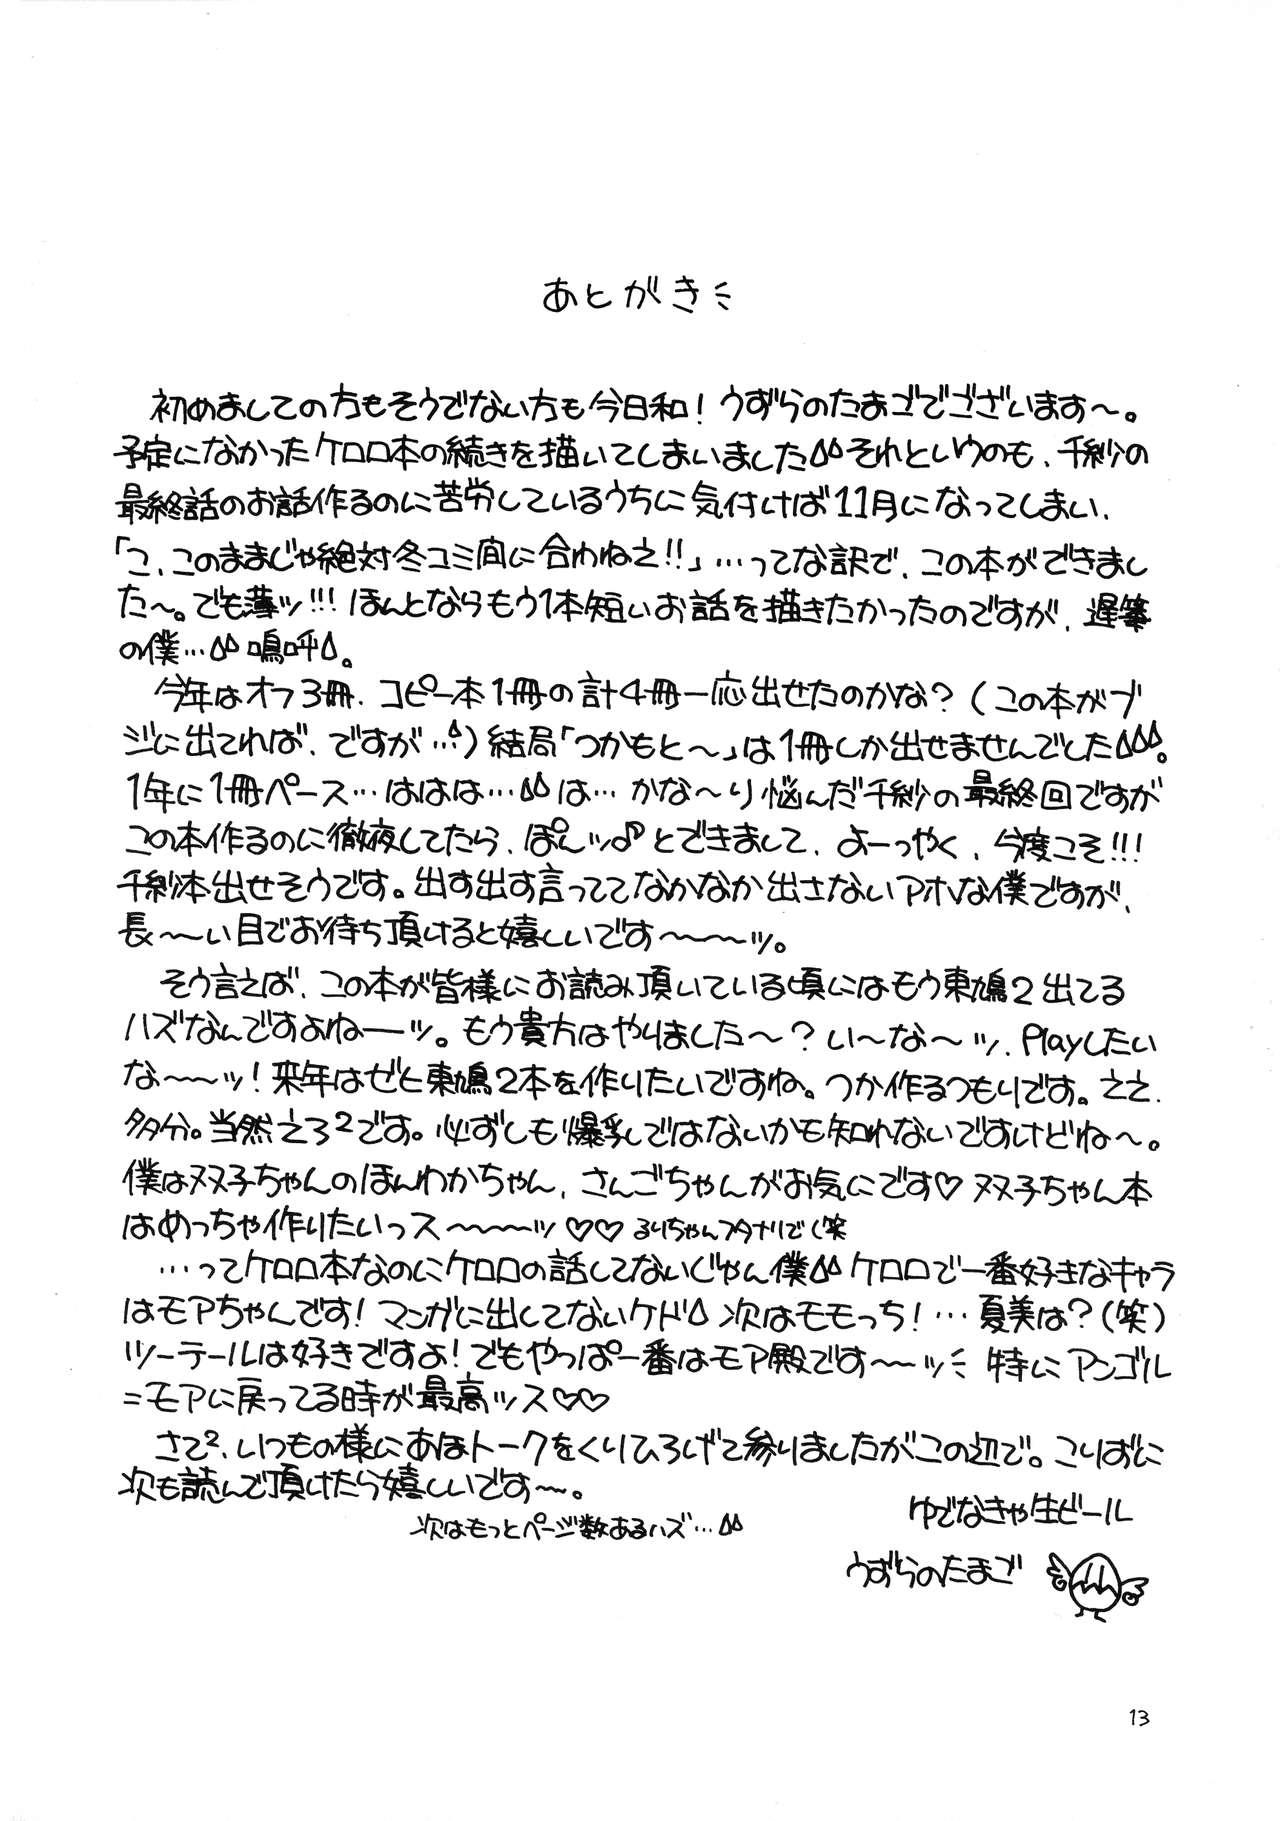 Playing Ane-chan no Bloomer - Keroro gunsou | sgt. frog Butt Plug - Page 13